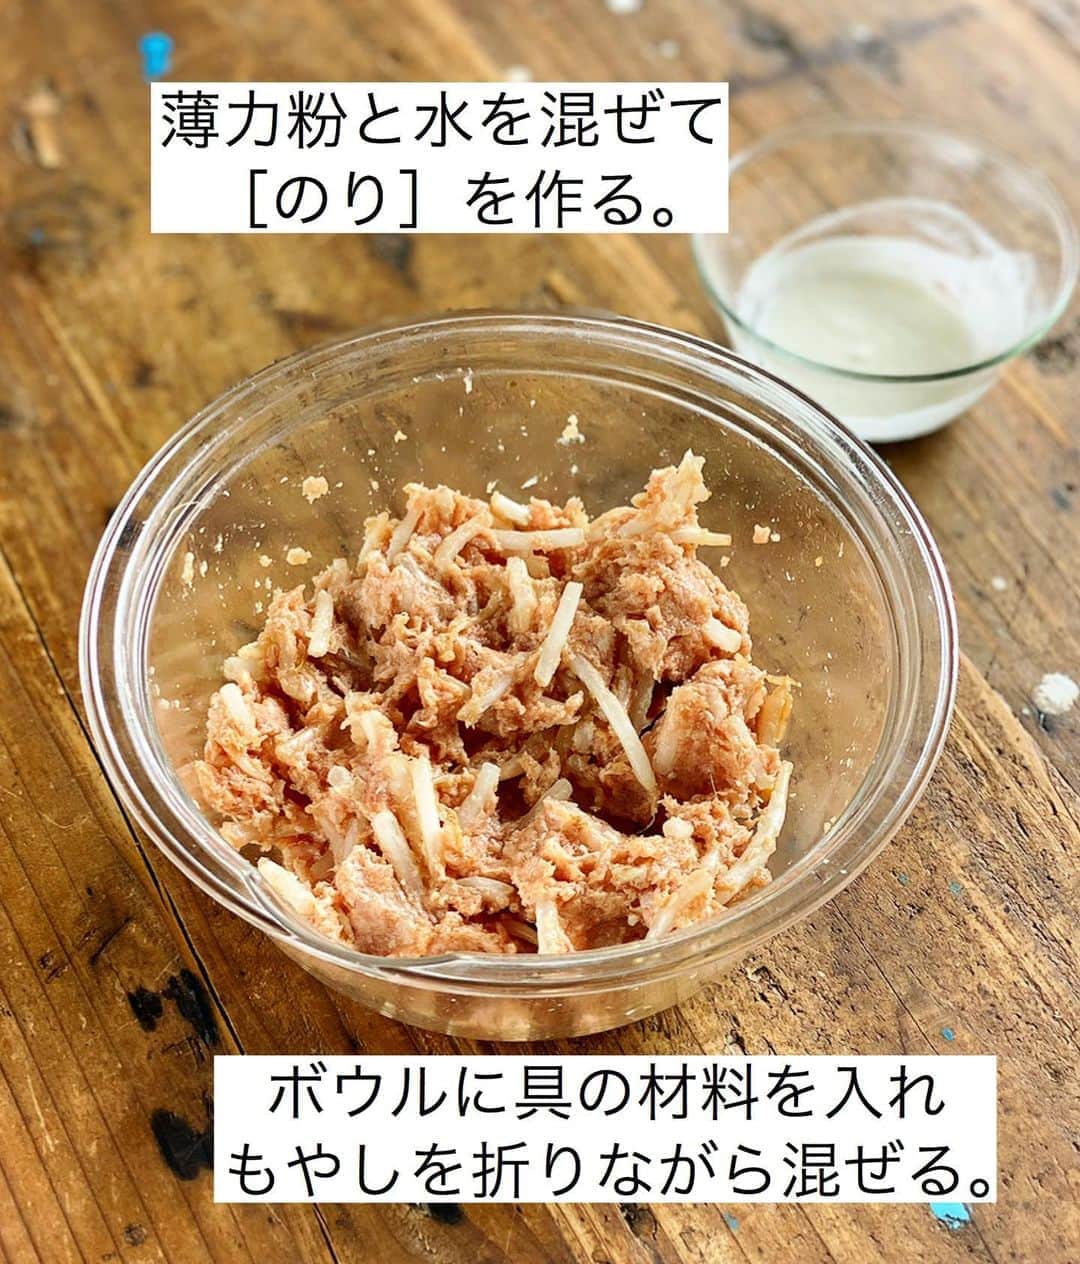 Mizuki【料理ブロガー・簡単レシピ】さんのインスタグラム写真 - (Mizuki【料理ブロガー・簡単レシピ】Instagram)「・﻿ 【レシピ】ーーーーーーーーーーーーーーーー﻿ ♡揚げずに簡単♡ひき肉ともやしの春巻き♡﻿ ーーーーーーーーーーーーーーーーーーーーー﻿ ﻿ ﻿ ﻿ おはようございます(*^^*)﻿ ﻿ 今日ご紹介させていただくのは﻿ ひき肉ともやしの春巻き♩﻿ 炒めず、冷まさず、揚げずに作れる﻿ 超〜簡単レシピです(*´艸`)﻿ ﻿ そのままで味はついていますが﻿ ポン酢や辛子、酢醤油をつけても﻿ 美味しいですよ〜♡﻿ ﻿ コスパも抜群なので﻿ よかったらお試し下さいね(*^^*)﻿ ﻿ ﻿ ﻿ ーーーーーーーーーーーーーーーーーーーー﻿ 【2人分】﻿ ●豚ひき肉...150g﻿ ●もやし...1/2袋(100g)﻿ ●醤油・オイスターソース・ごま油...各小1﻿ ●生姜チューブ...3cm﻿ 春巻きの皮...6枚﻿ 薄力粉・水...各大1/2﻿ サラダ油...大3﻿ ﻿ 1.薄力粉と水を混ぜて［のり］を作っておく。ボウルに●を入れ、もやしを折りながら混ぜる。﻿ 2.春巻きの皮をひし形になるように置き、手前に餡の1/6量をのせて巻き、巻き終わりにのりを塗って留める。残りも同様にする。﻿ 3.フライパンにサラダ油を中火で熱し、2を両面色よく焼いて火を通す。﻿ ーーーーーーーーーーーーーーーーーーーー﻿ ﻿ ﻿ ﻿ 《ポイント》﻿ ♦︎春巻きは厚みを薄めにすると火が通りやすくなります♩﻿ ♦︎油はねの原因になりますので、皮でしっかり包んで留めて下さい☆﻿ ﻿ ﻿ ﻿ ﻿ ﻿ ﻿ ﻿ ＿＿＿＿＿＿＿＿＿＿＿＿＿＿＿＿＿＿＿﻿ 📕7刷重版しました📕﻿ 簡単・時短！ 毎日のごはんがラクになる﻿ ✨🦋 【 #Mizukiの今どき和食 】🦋✨﻿ ＿＿＿＿＿＿＿＿＿＿＿＿＿＿＿＿＿＿＿﻿ なるべく少ない材料で﻿ 手間も時間も省きながら﻿ 簡単にできるおいしい和食レシピ♩﻿ 簡単に失敗なくマスターできる一冊で﻿ もっと気軽に、カジュアルに﻿ 和食を楽しんで下さいね(*^^*)﻿ ＿＿＿＿＿＿＿＿＿＿＿＿＿＿＿＿＿＿＿﻿ ﻿ ﻿ ﻿ ＿＿＿＿＿＿＿＿＿＿＿＿＿＿＿＿＿＿＿﻿ 🎀6刷重版しました🎀﻿ 混ぜて焼くだけ。はじめてでも失敗しない！﻿ 【#ホットケーキミックスのお菓子 】﻿ ﻿ 一冊まるっとホケミスイーツ♩﻿ 普段のおやつから﻿ 特別な日にも使えるレシピを﻿ この一冊に詰め込みました(*^^*)﻿ ホットケーキミックスを使えば﻿ 簡単に本格的なお菓子が作れますよ♡﻿ ＿＿＿＿＿＿＿＿＿＿＿＿＿＿＿＿＿﻿ ﻿ ﻿ ﻿ ﻿ ￣￣￣￣￣￣￣￣￣￣￣￣￣￣￣￣￣￣﻿ レシピを作って下さった際や﻿ レシピ本についてのご投稿には﻿ タグ付け( @mizuki_31cafe )して﻿ お知らせいただけると嬉しいです😊💕﻿ ＿＿＿＿＿＿＿＿＿＿＿＿＿＿＿＿＿＿﻿ ﻿ ﻿ ﻿ ﻿ ﻿ #ひき肉#もやし#春巻き#揚げない#コスパ﻿ #Mizuki#簡単レシピ#時短レシピ#節約レシピ#料理#レシピ#フーディーテーブル#マカロニメイト#おうちごはん#デリスタグラマー#料理好きな人と繋がりたい#食べ物#料理記録#おうちごはんlover#写真好きな人と繋がりたい#foodpic#cooking#recipe#lin_stagrammer#foodporn#yummy#ひき肉ともやしの春巻きm」8月27日 6時41分 - mizuki_31cafe